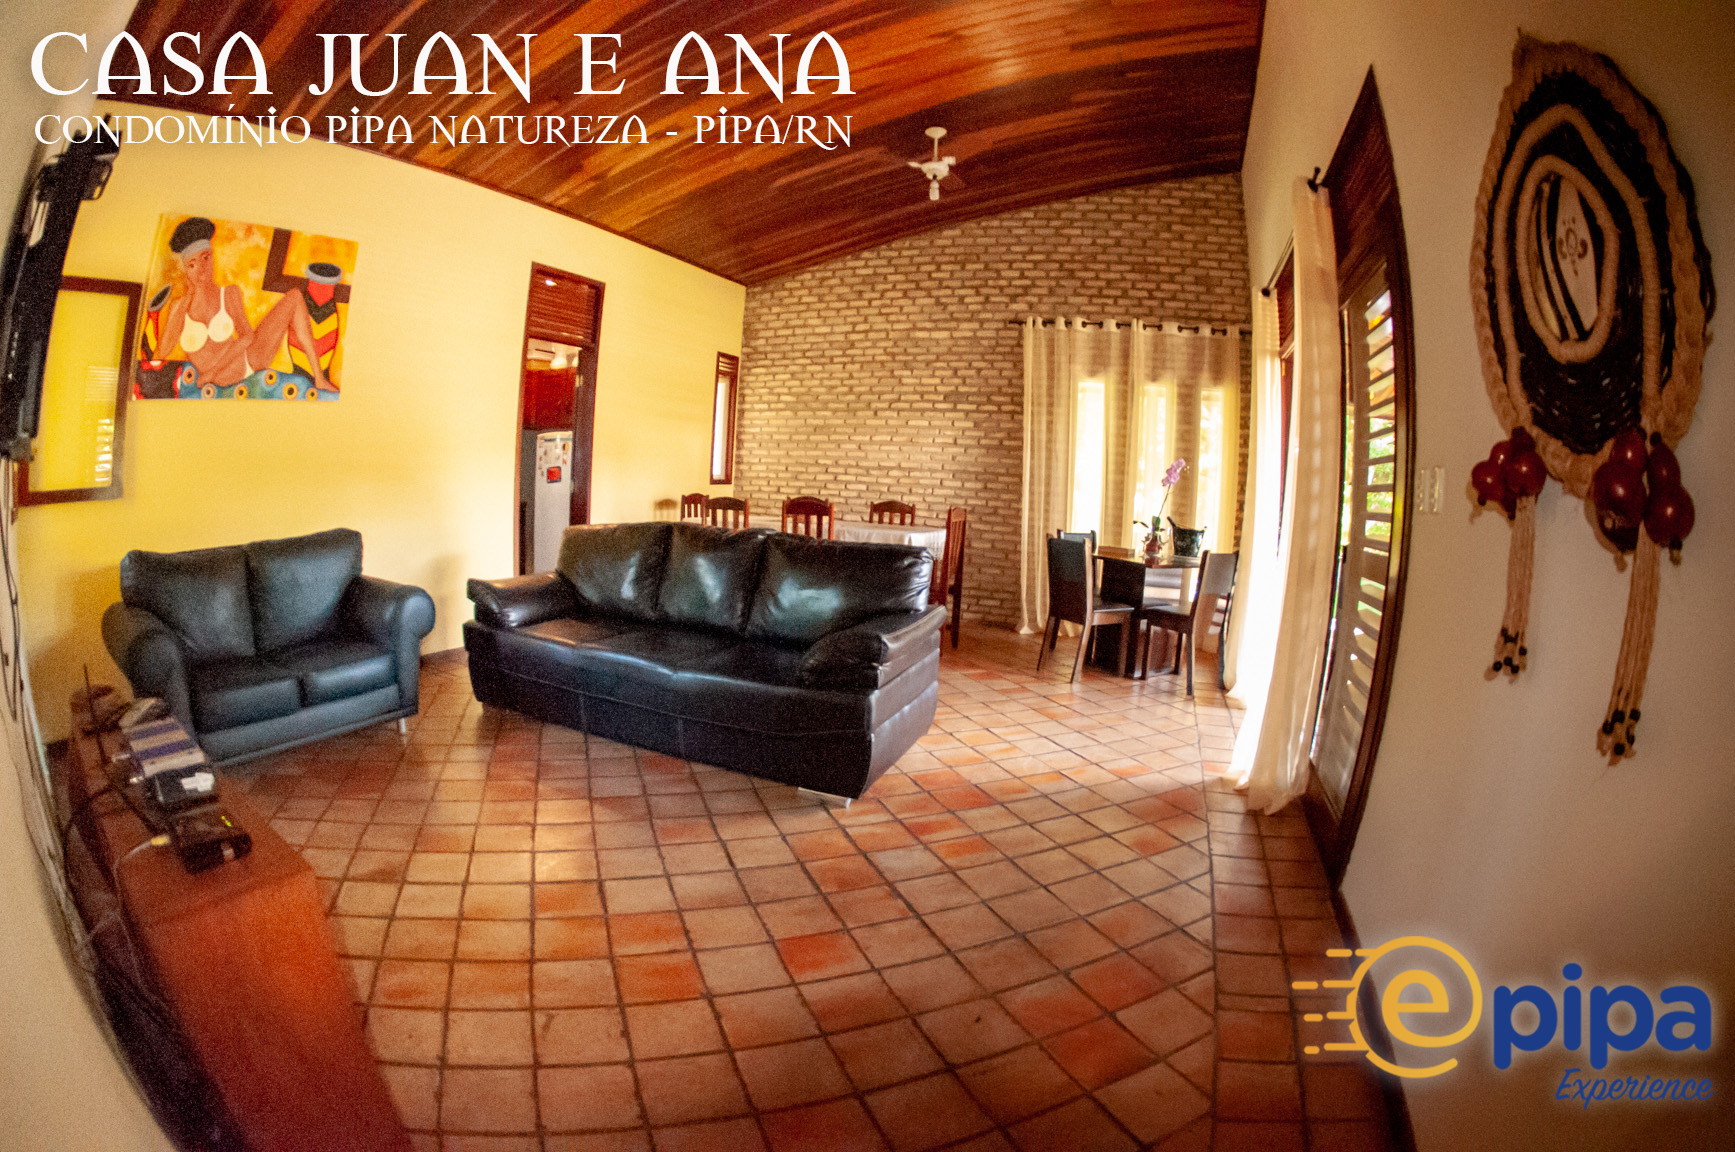 ePipa – Casa Juan e Ana